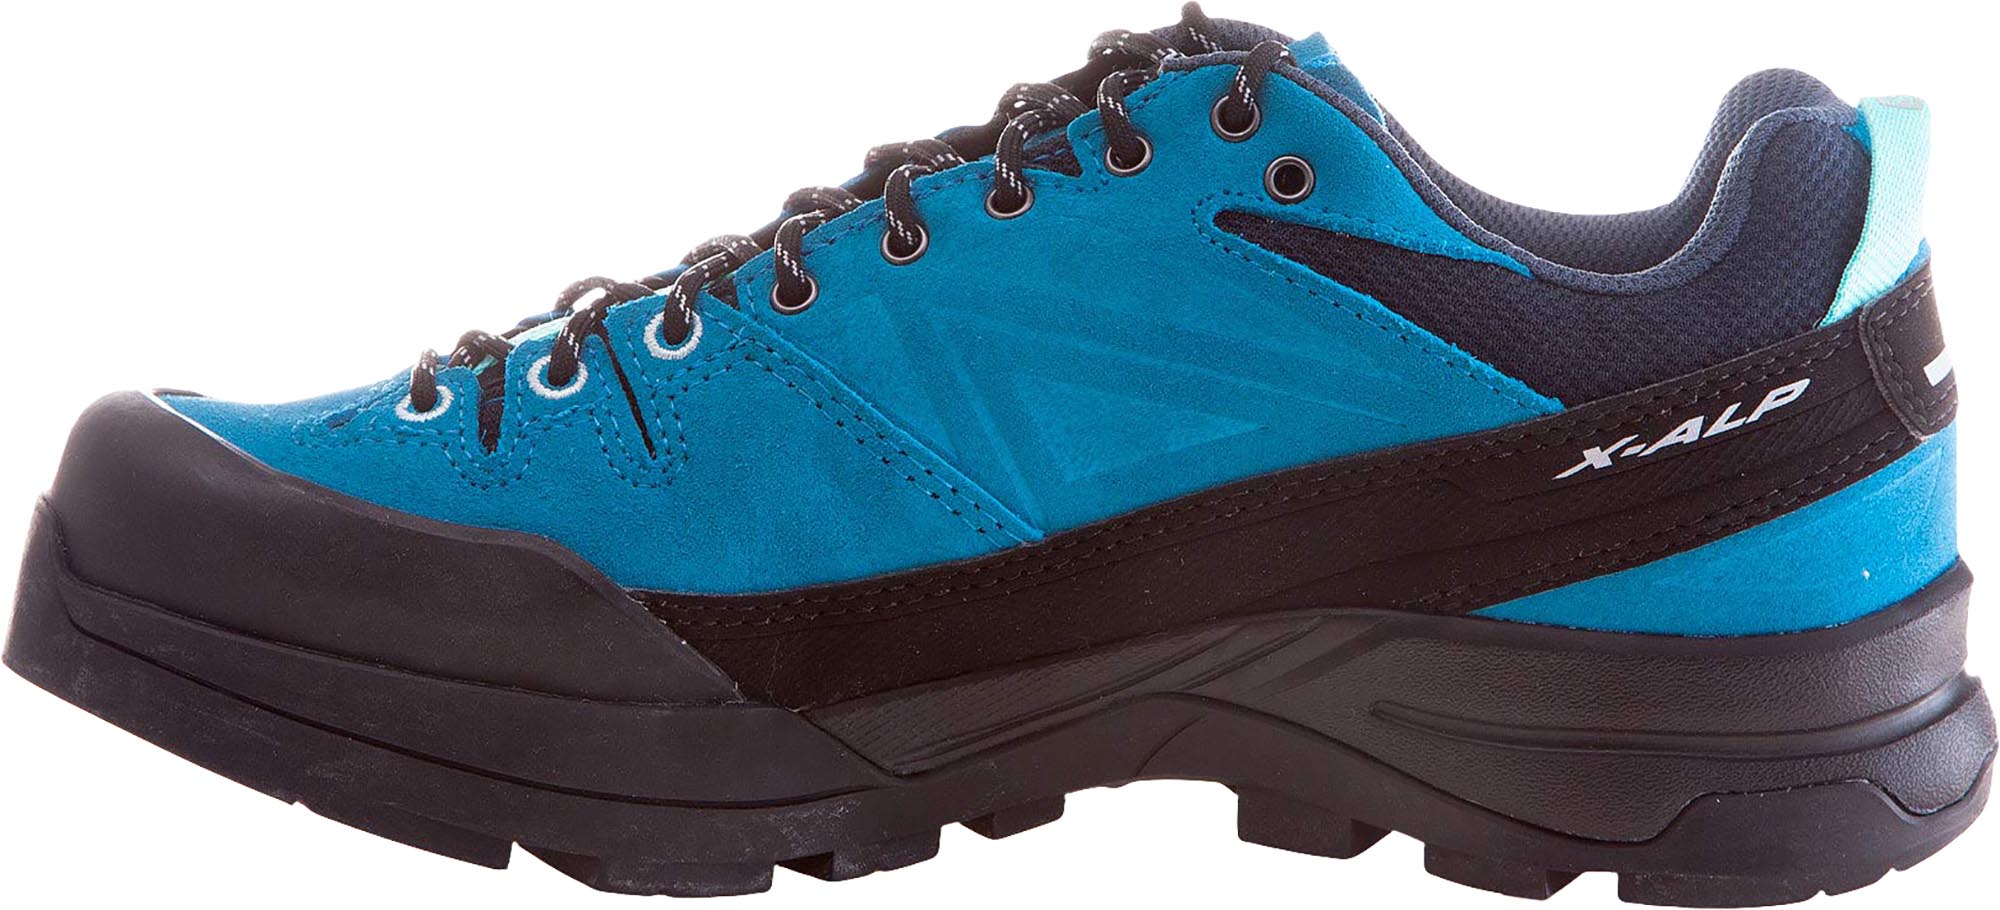 Women’s mountain hiking shoes